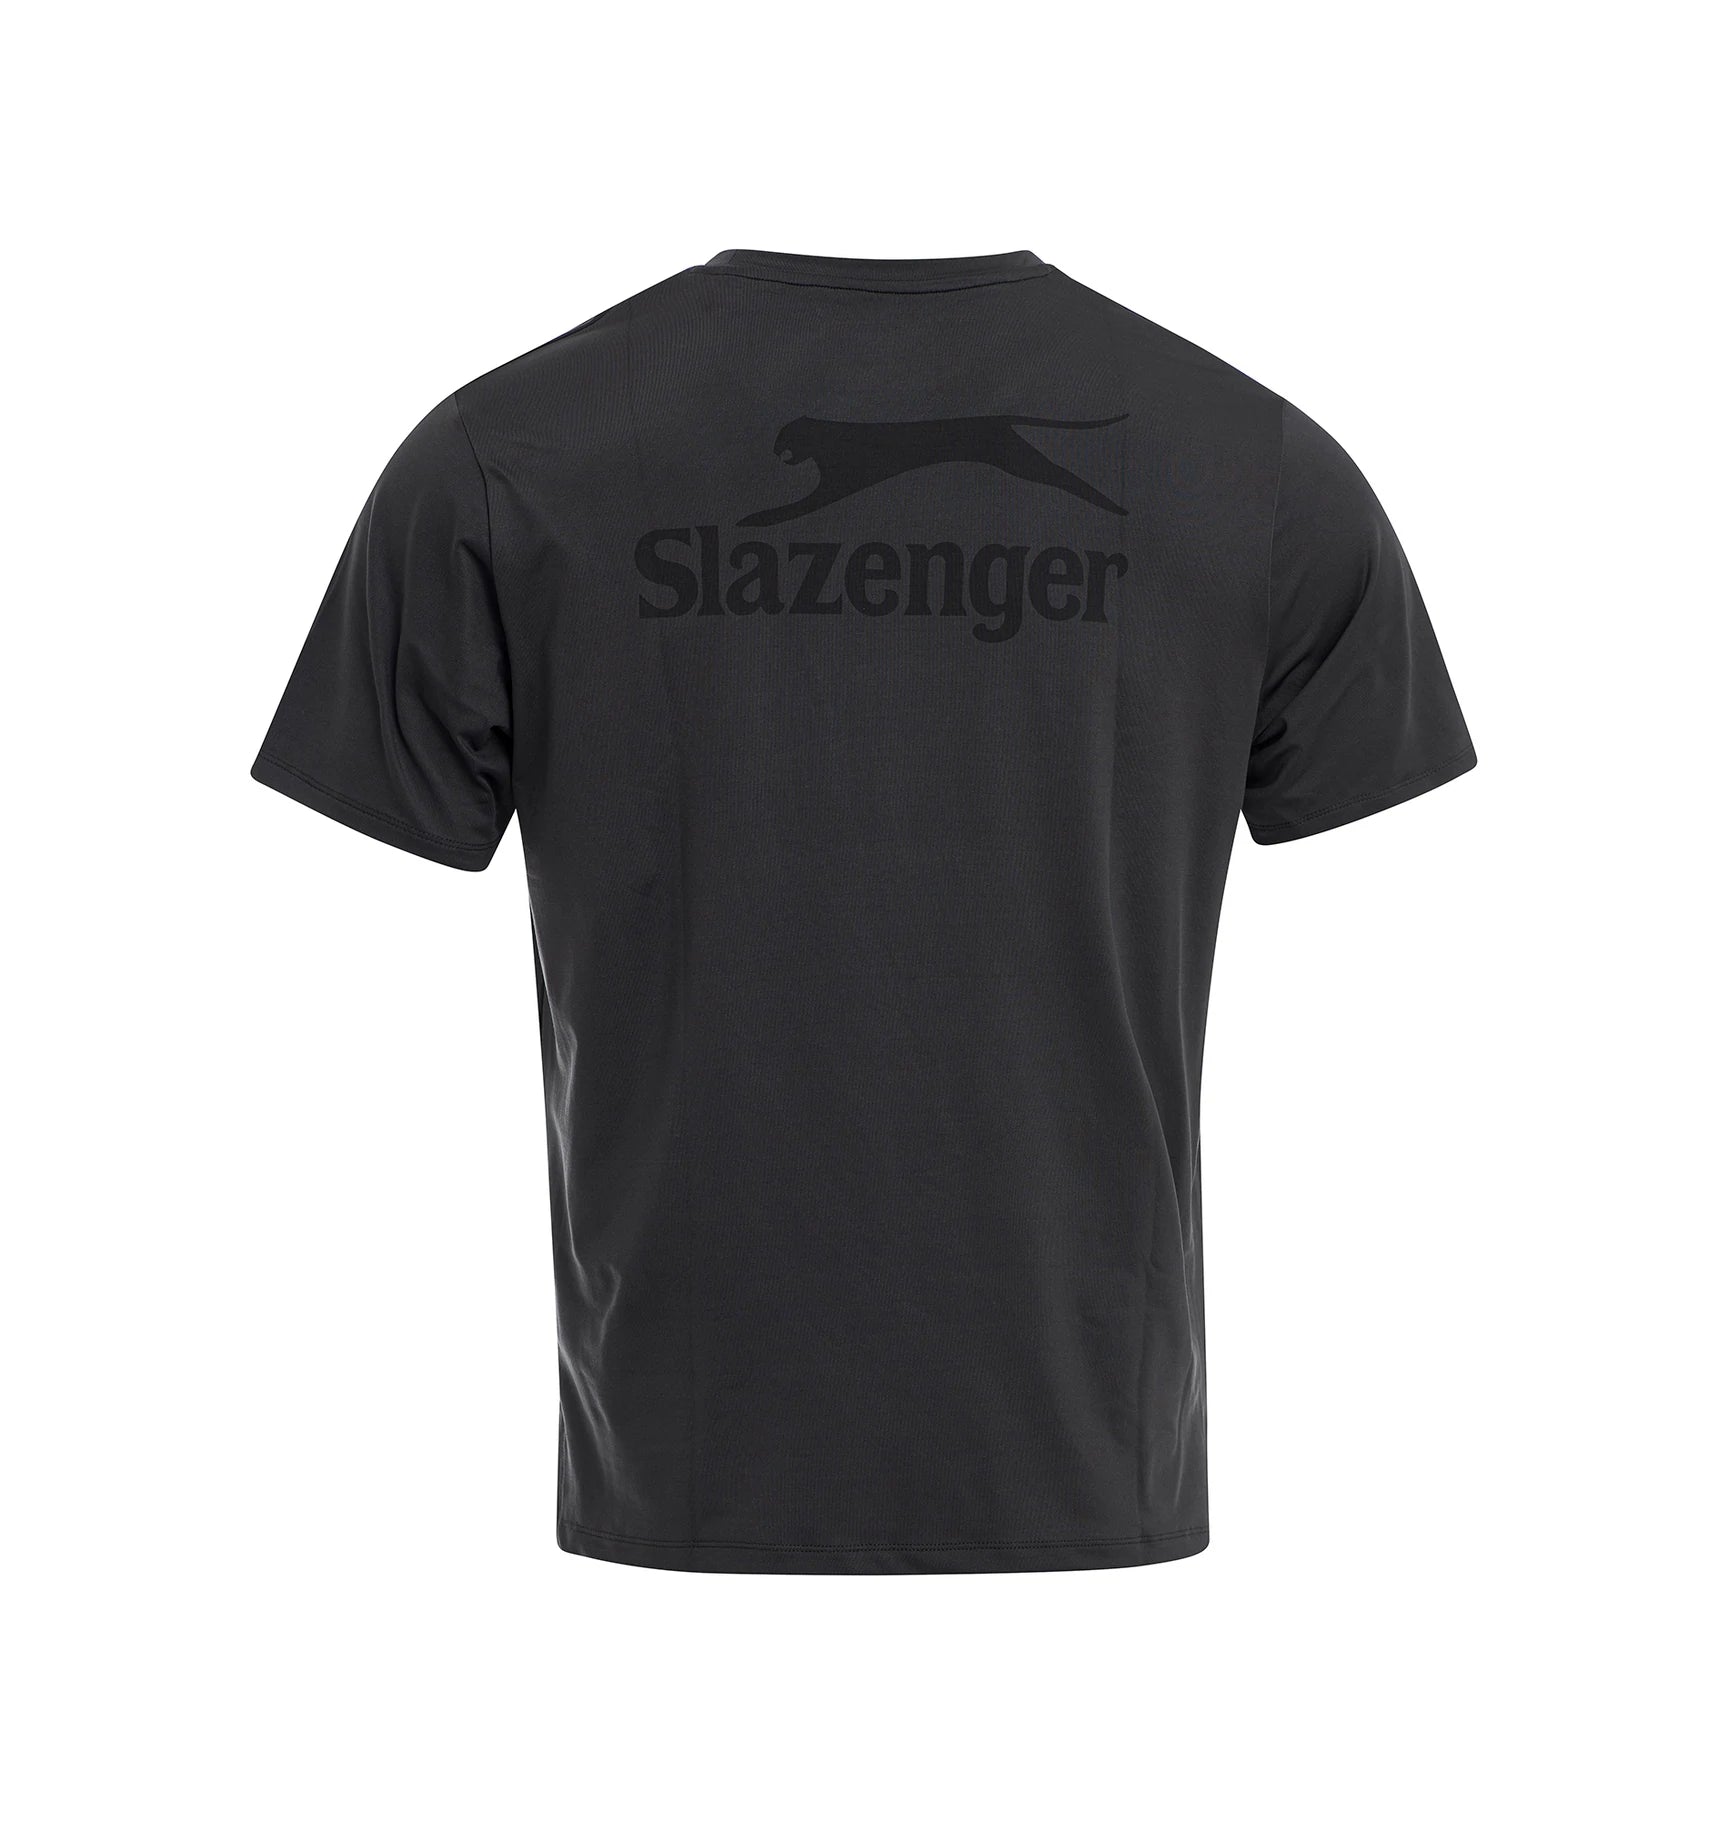 Slazenger Tim Tee T-Shirt grau